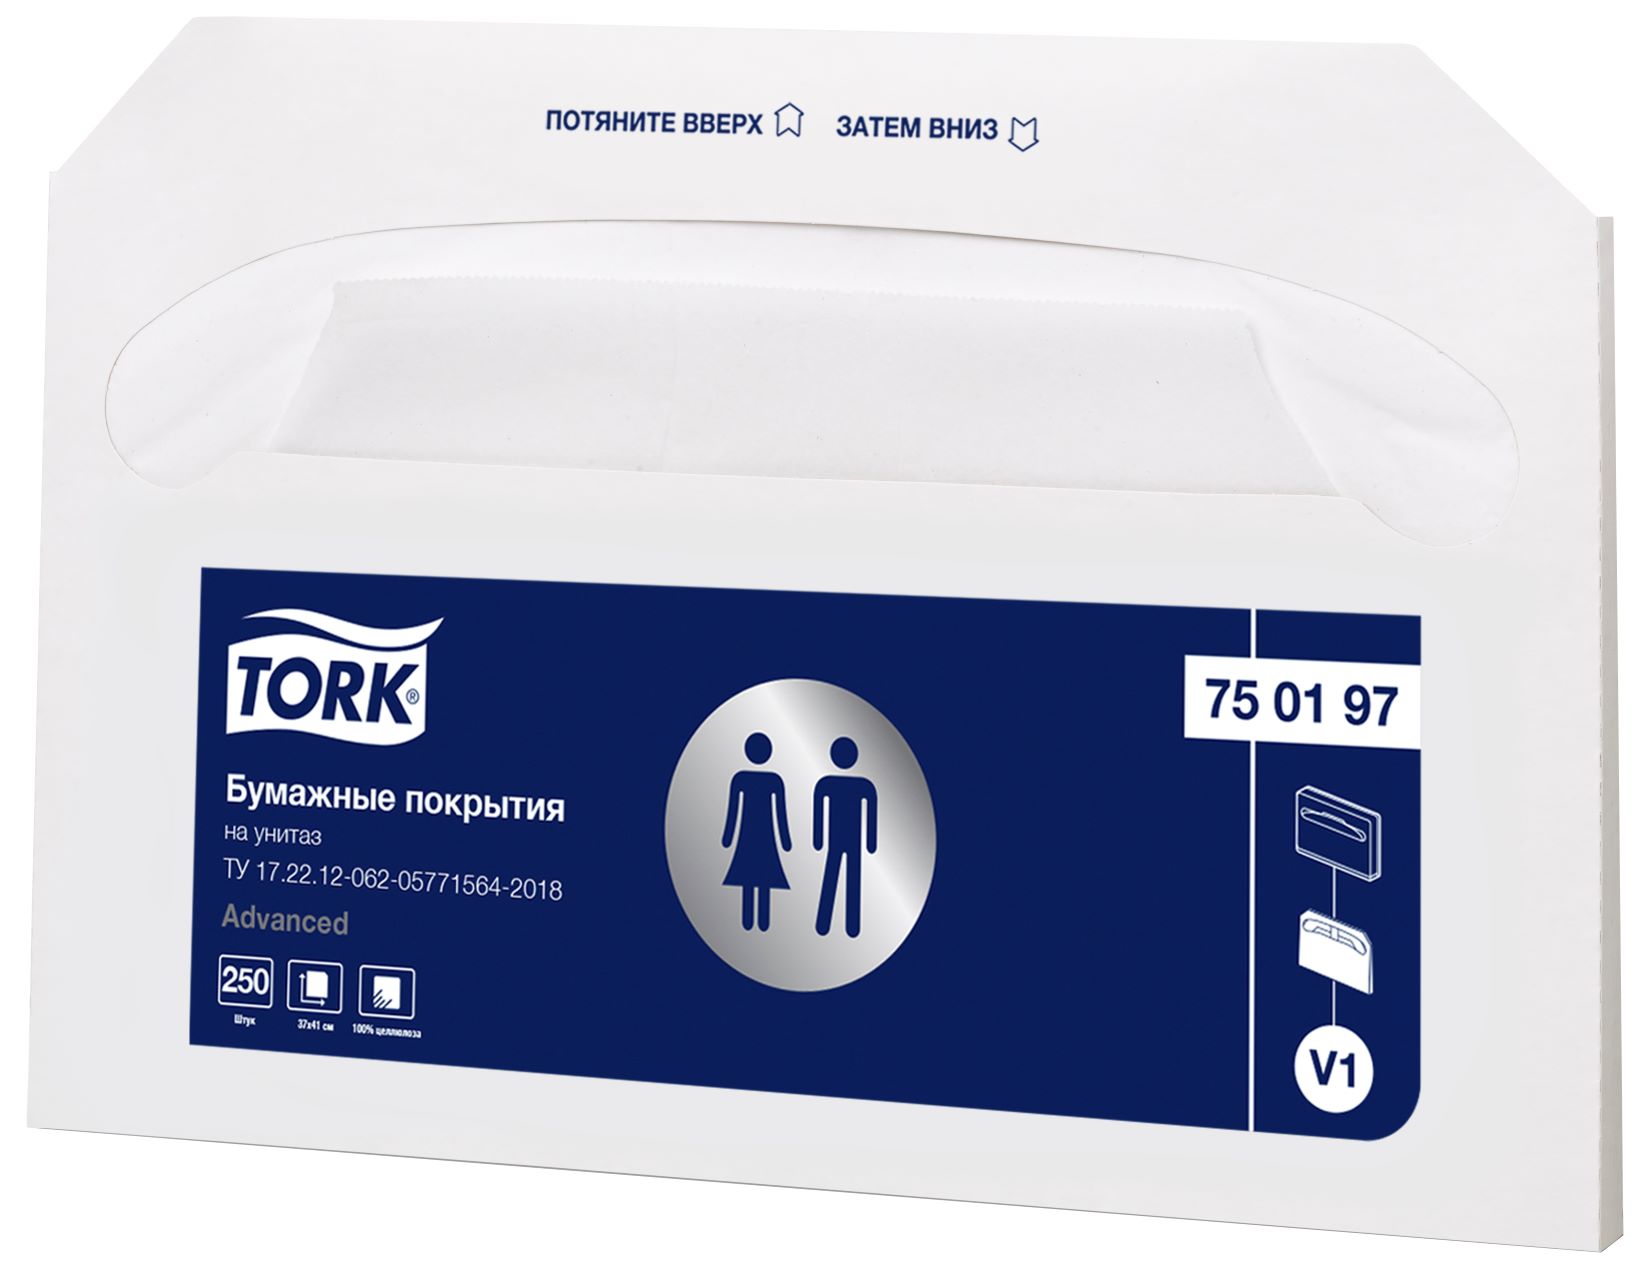 Одноразовые покрытия на унитаз TORK V1  в упаковке 250 шт (артикул производителя 750197)